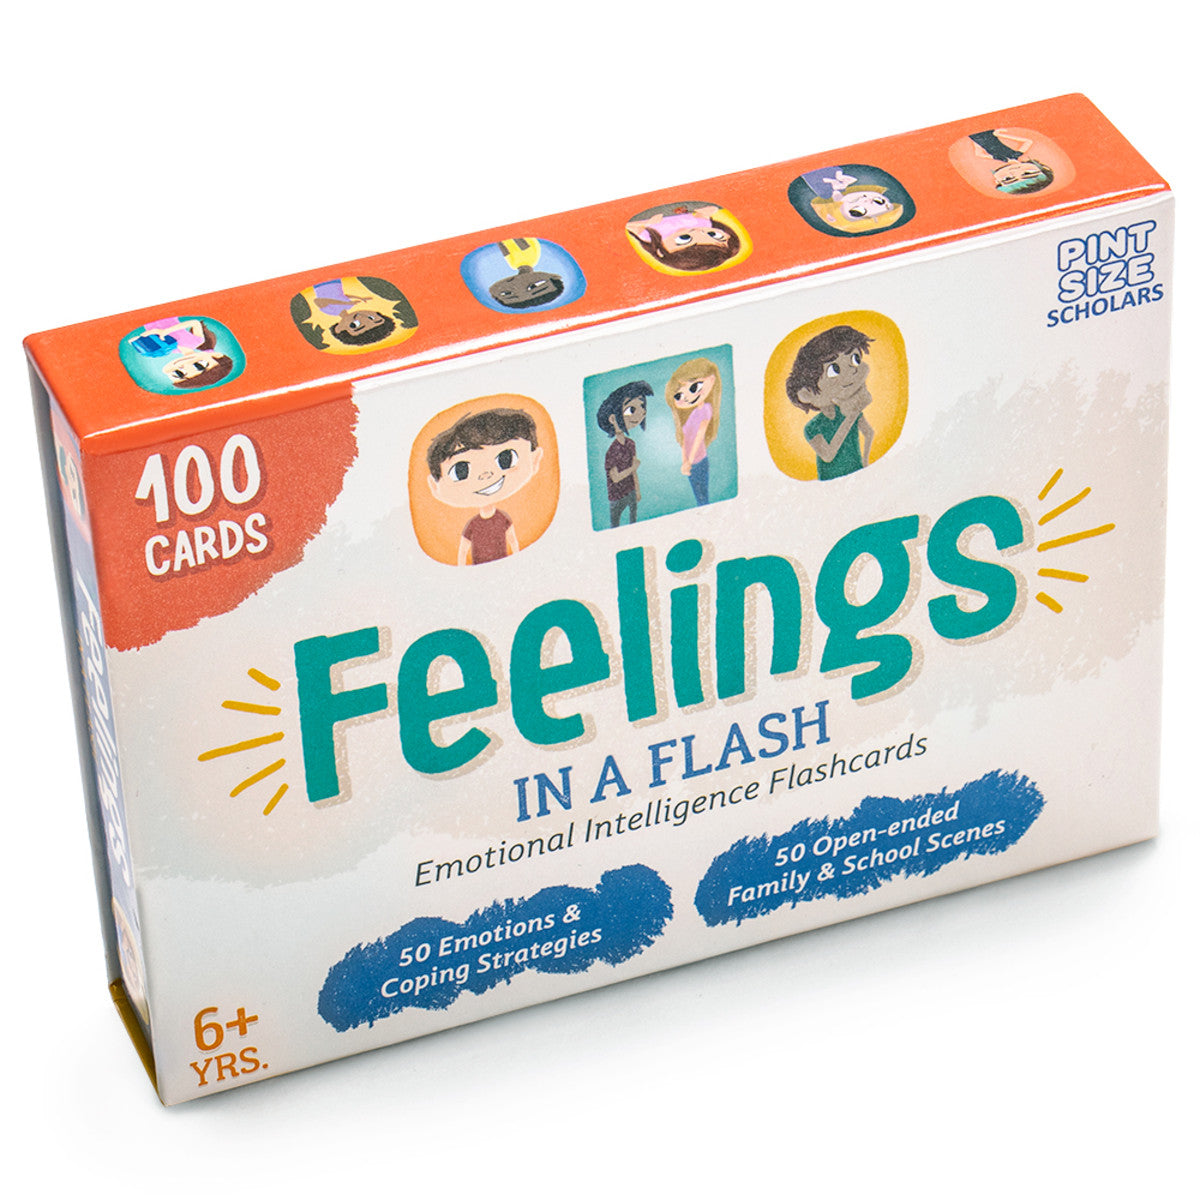 Feelings in a Flash: Emotion Flashcards